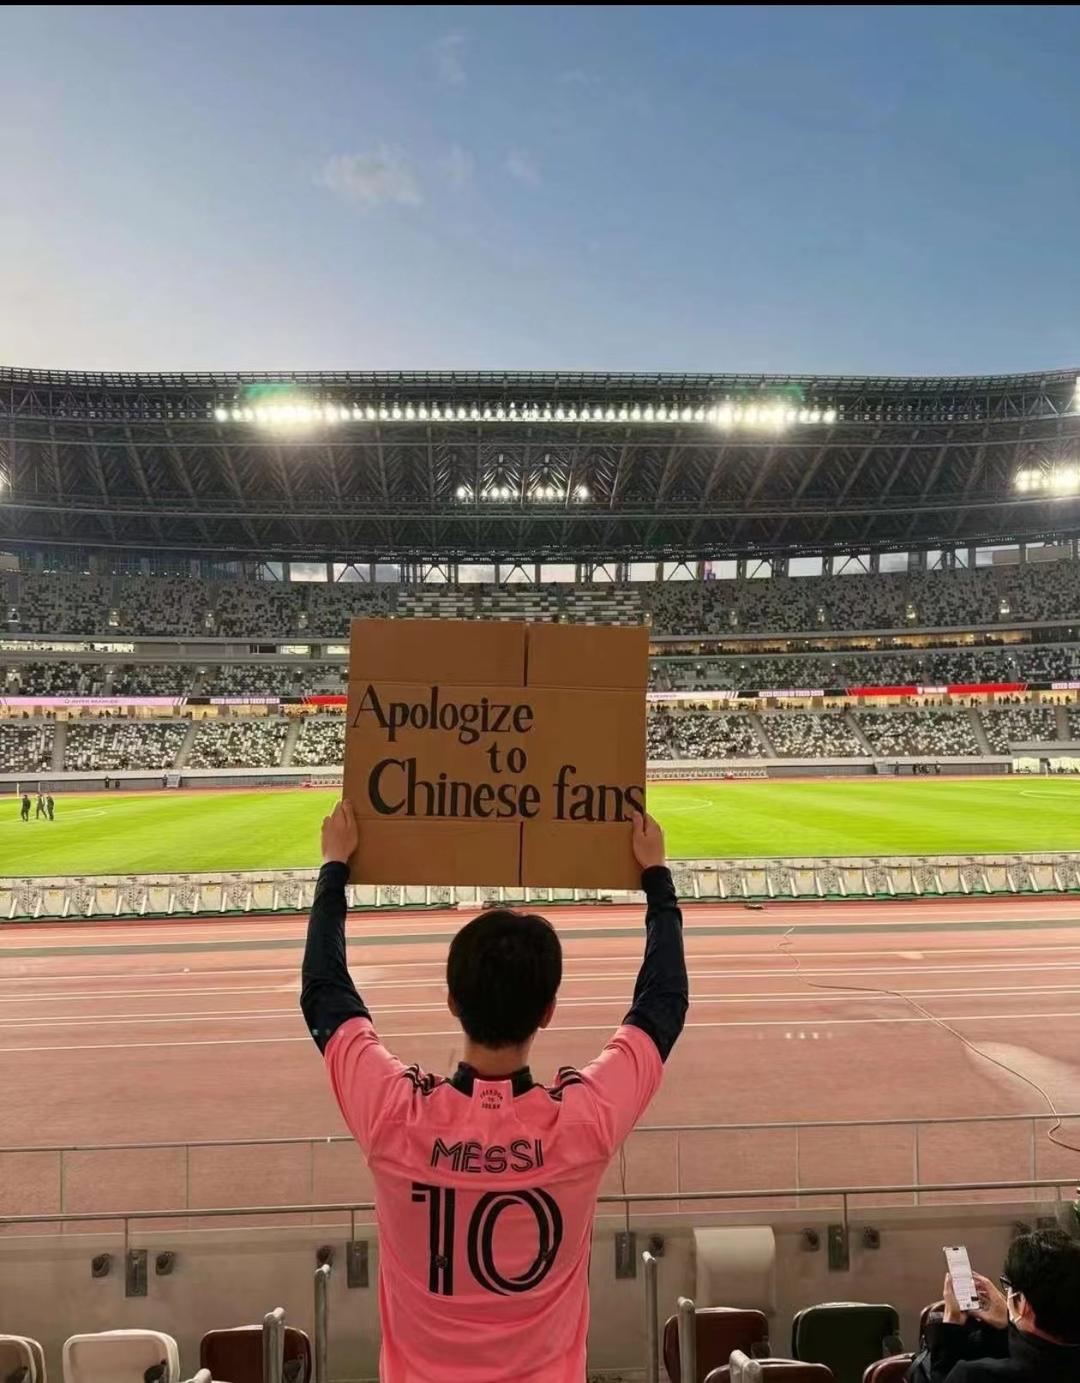 现场有人举着写有“Apologtze to Chinese fans（向中国球迷道歉）”字样的纸牌进行抗议